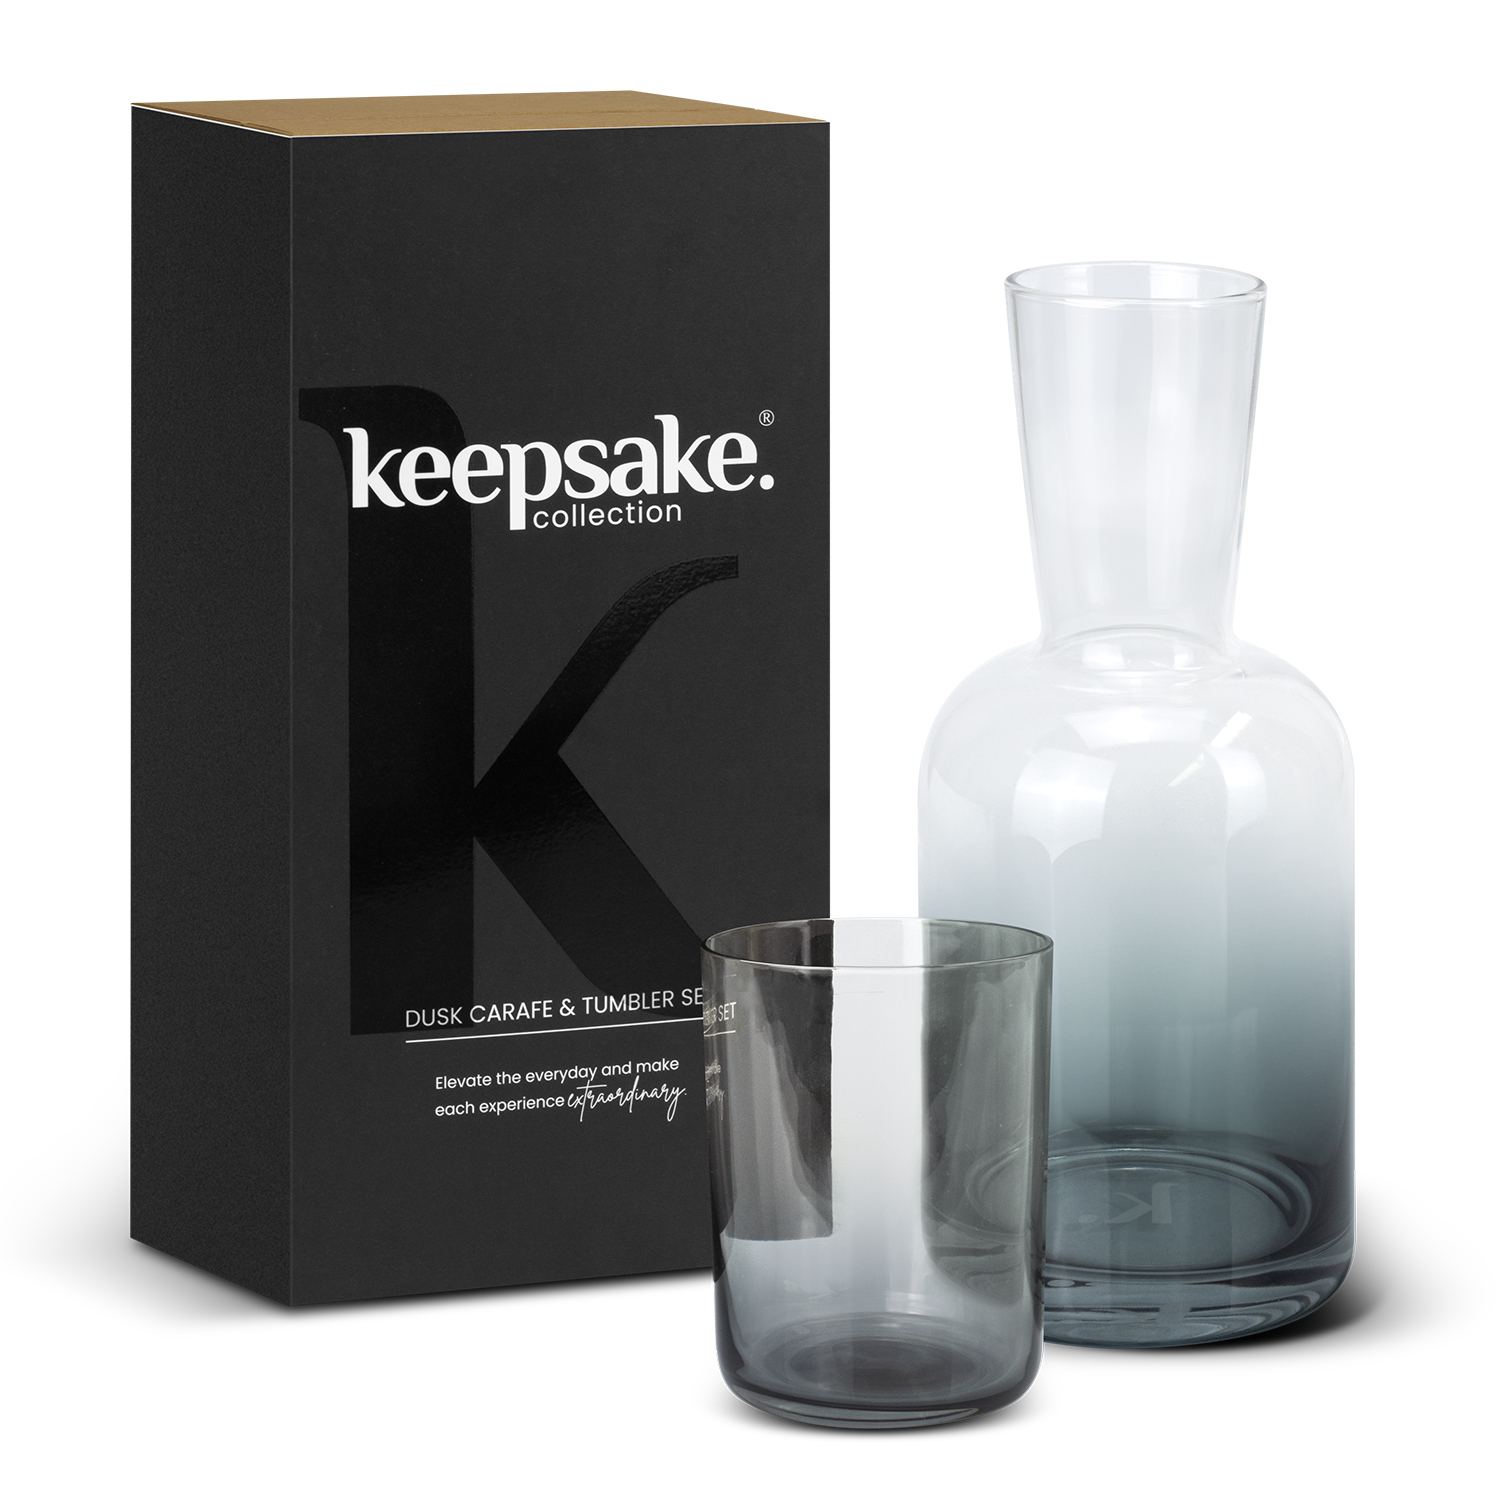 Glassware Keepsake Dusk Carafe and Tumbler Set and